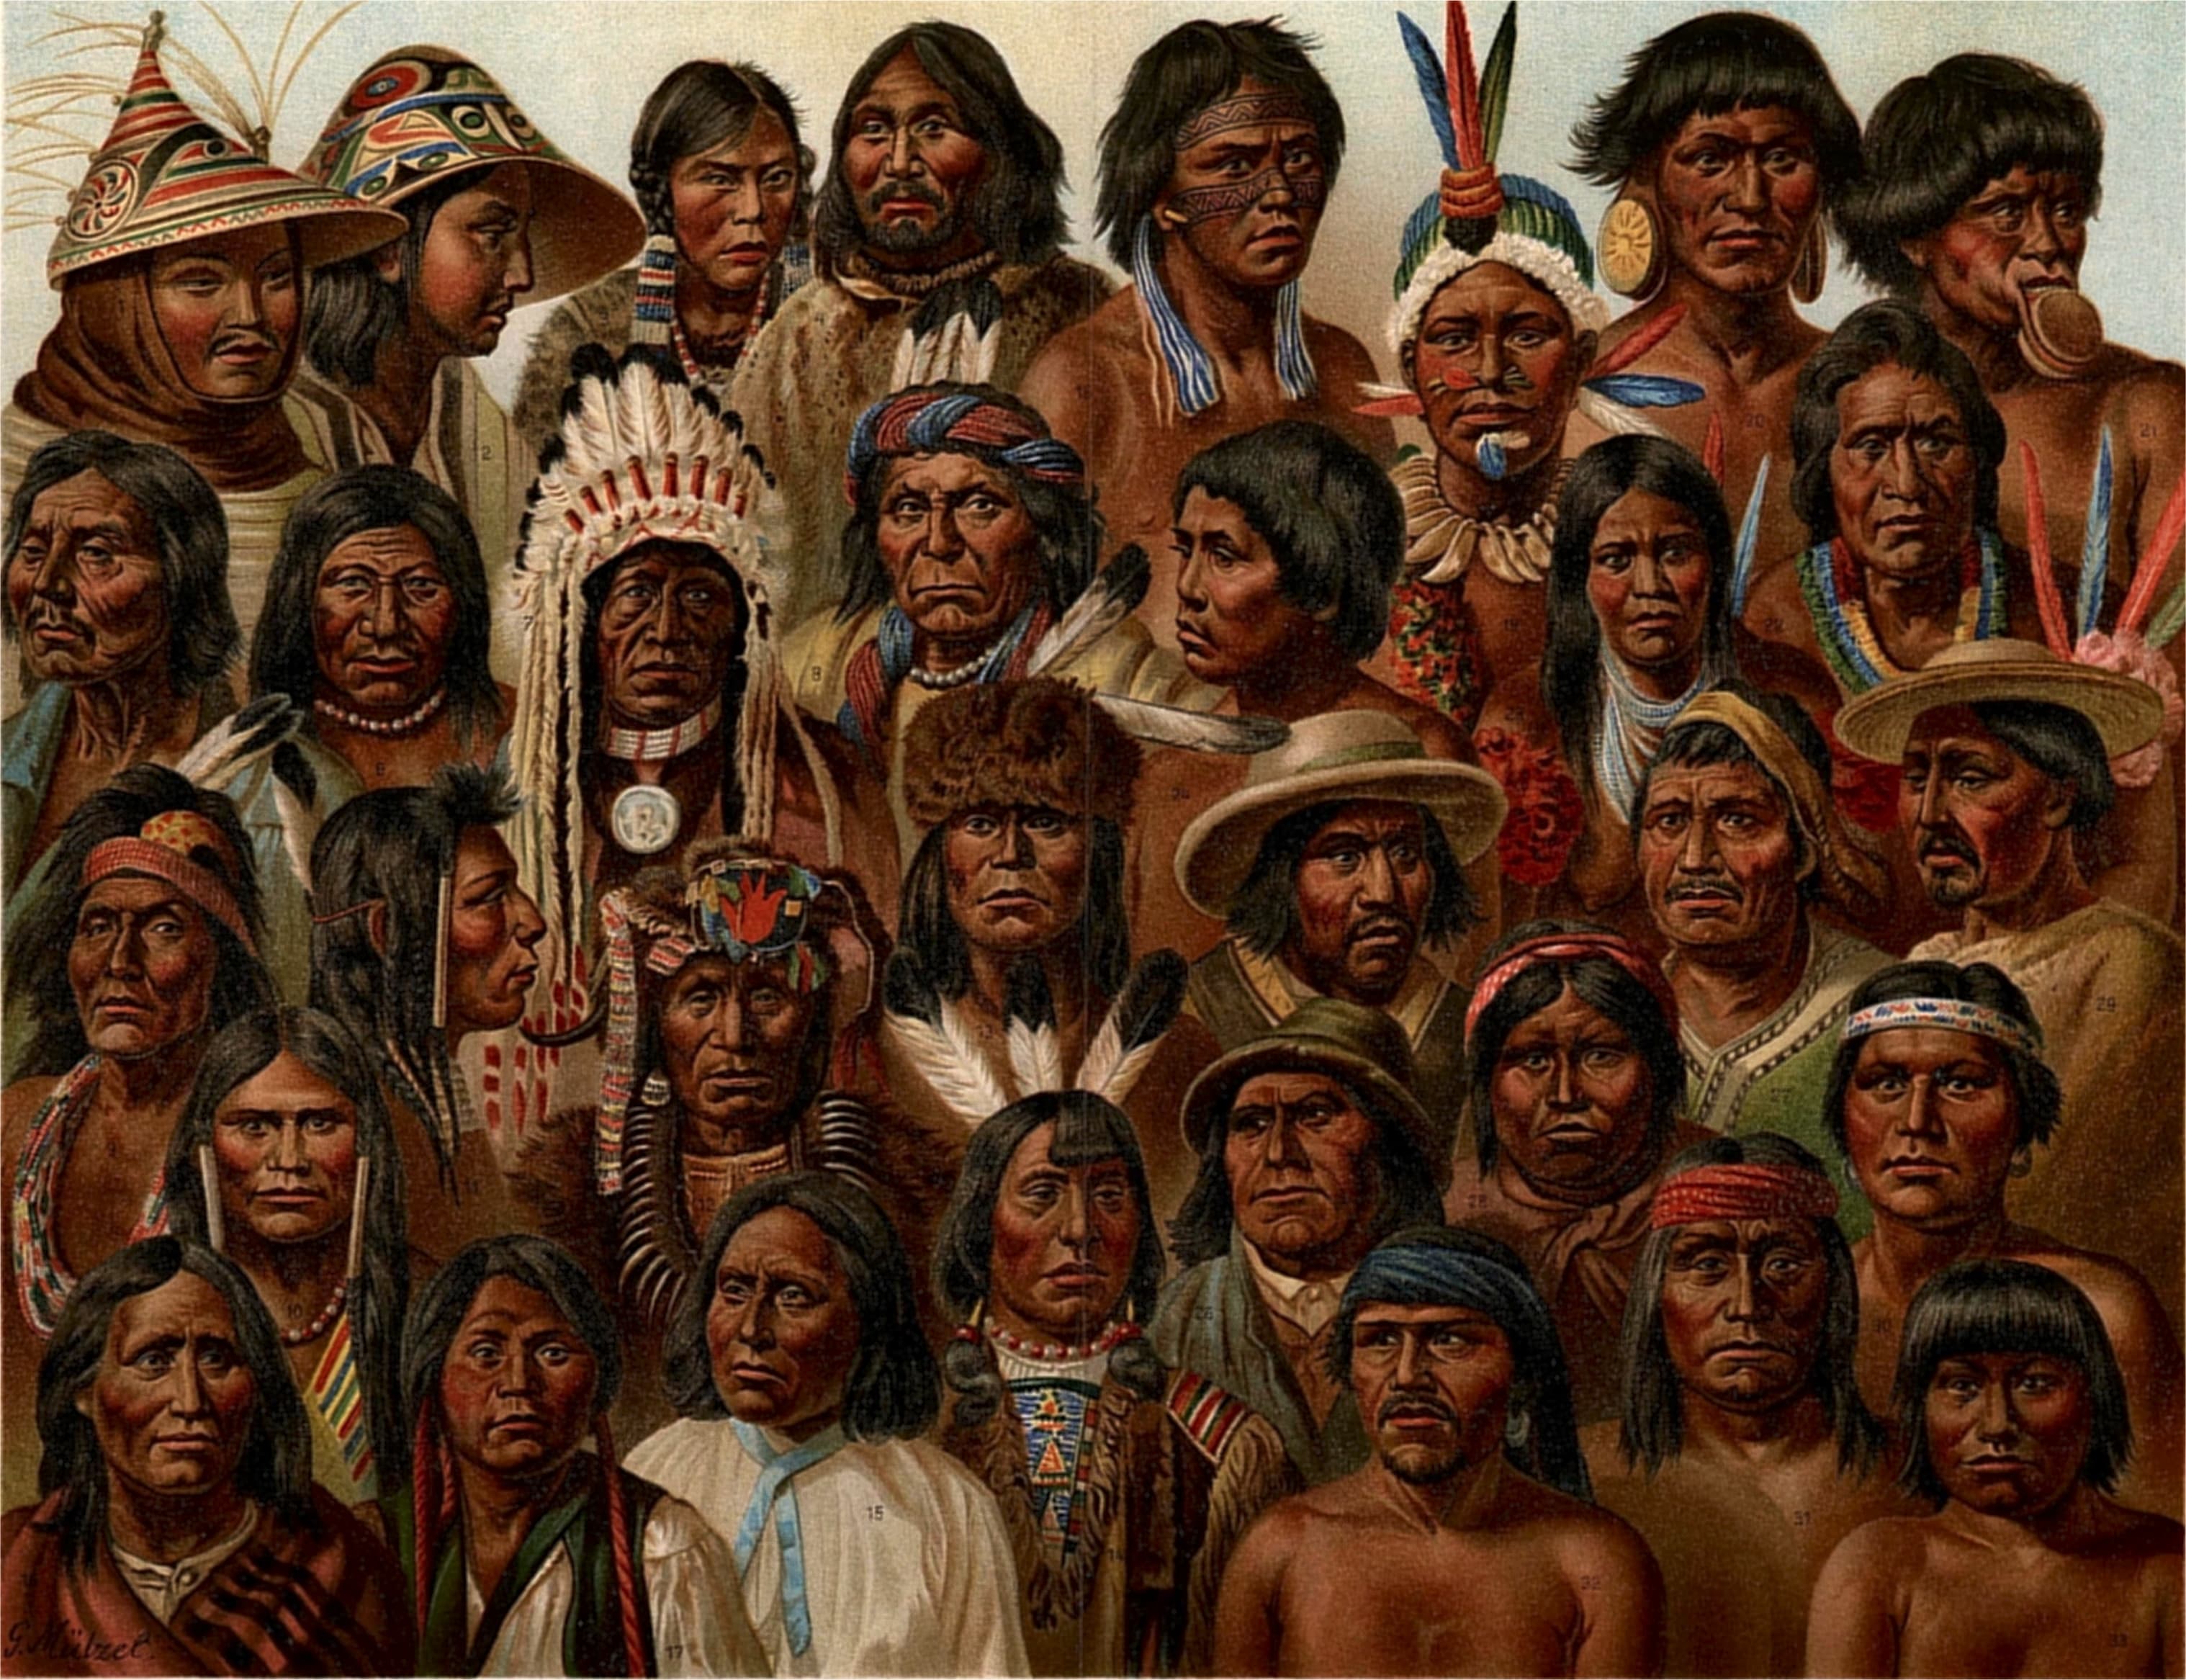 ilustracion-de-los-pueblos-originarios-del-continente-americano-Wikimedia-Commons).